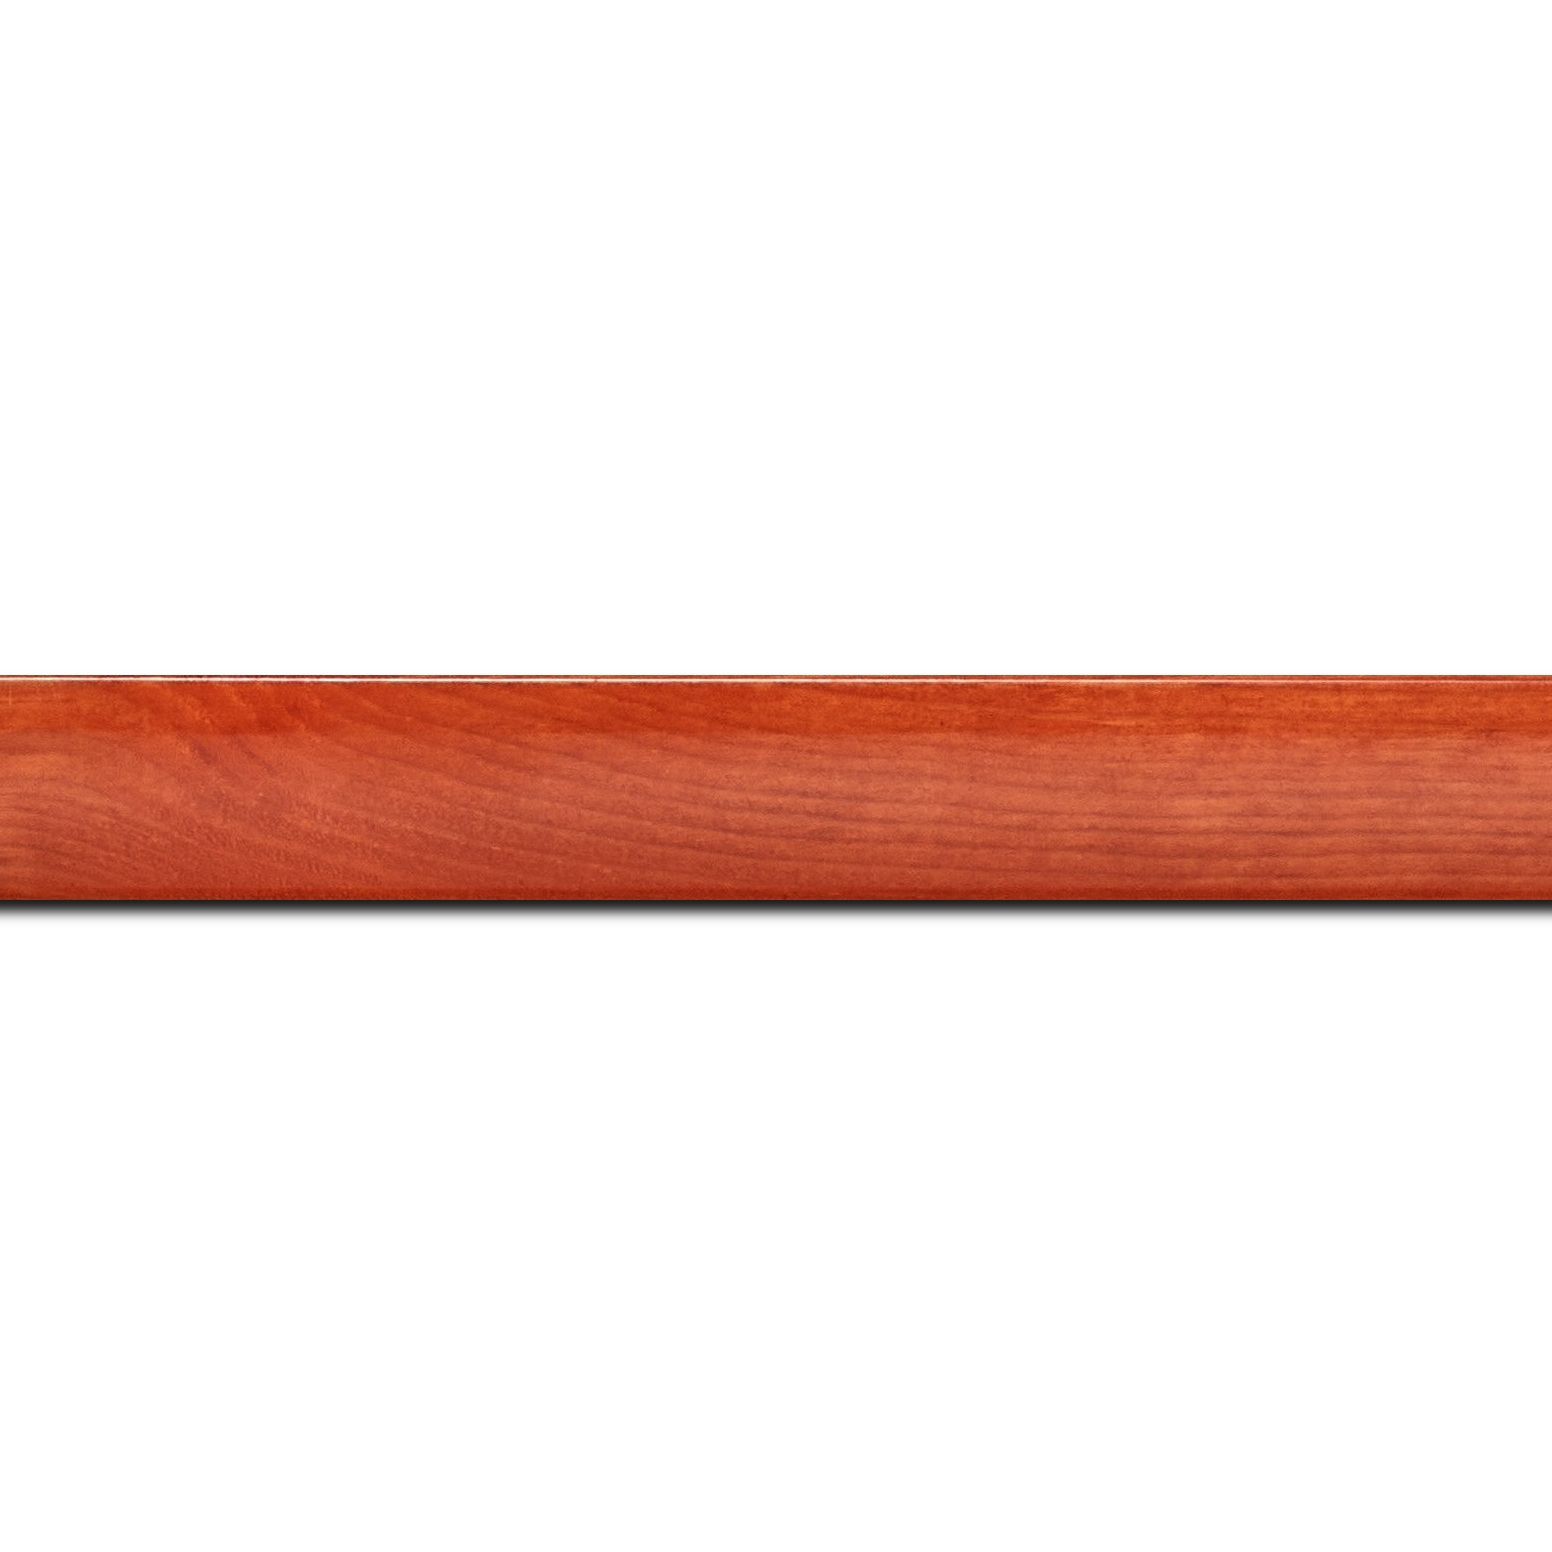 Pack par 12m, bois profil arrondi en pente plongeant largeur 2.4cm couleur orange finition vernis brillant,veine du bois  apparent (pin) ,  (longueur baguette pouvant varier entre 2.40m et 3m selon arrivage des bois)